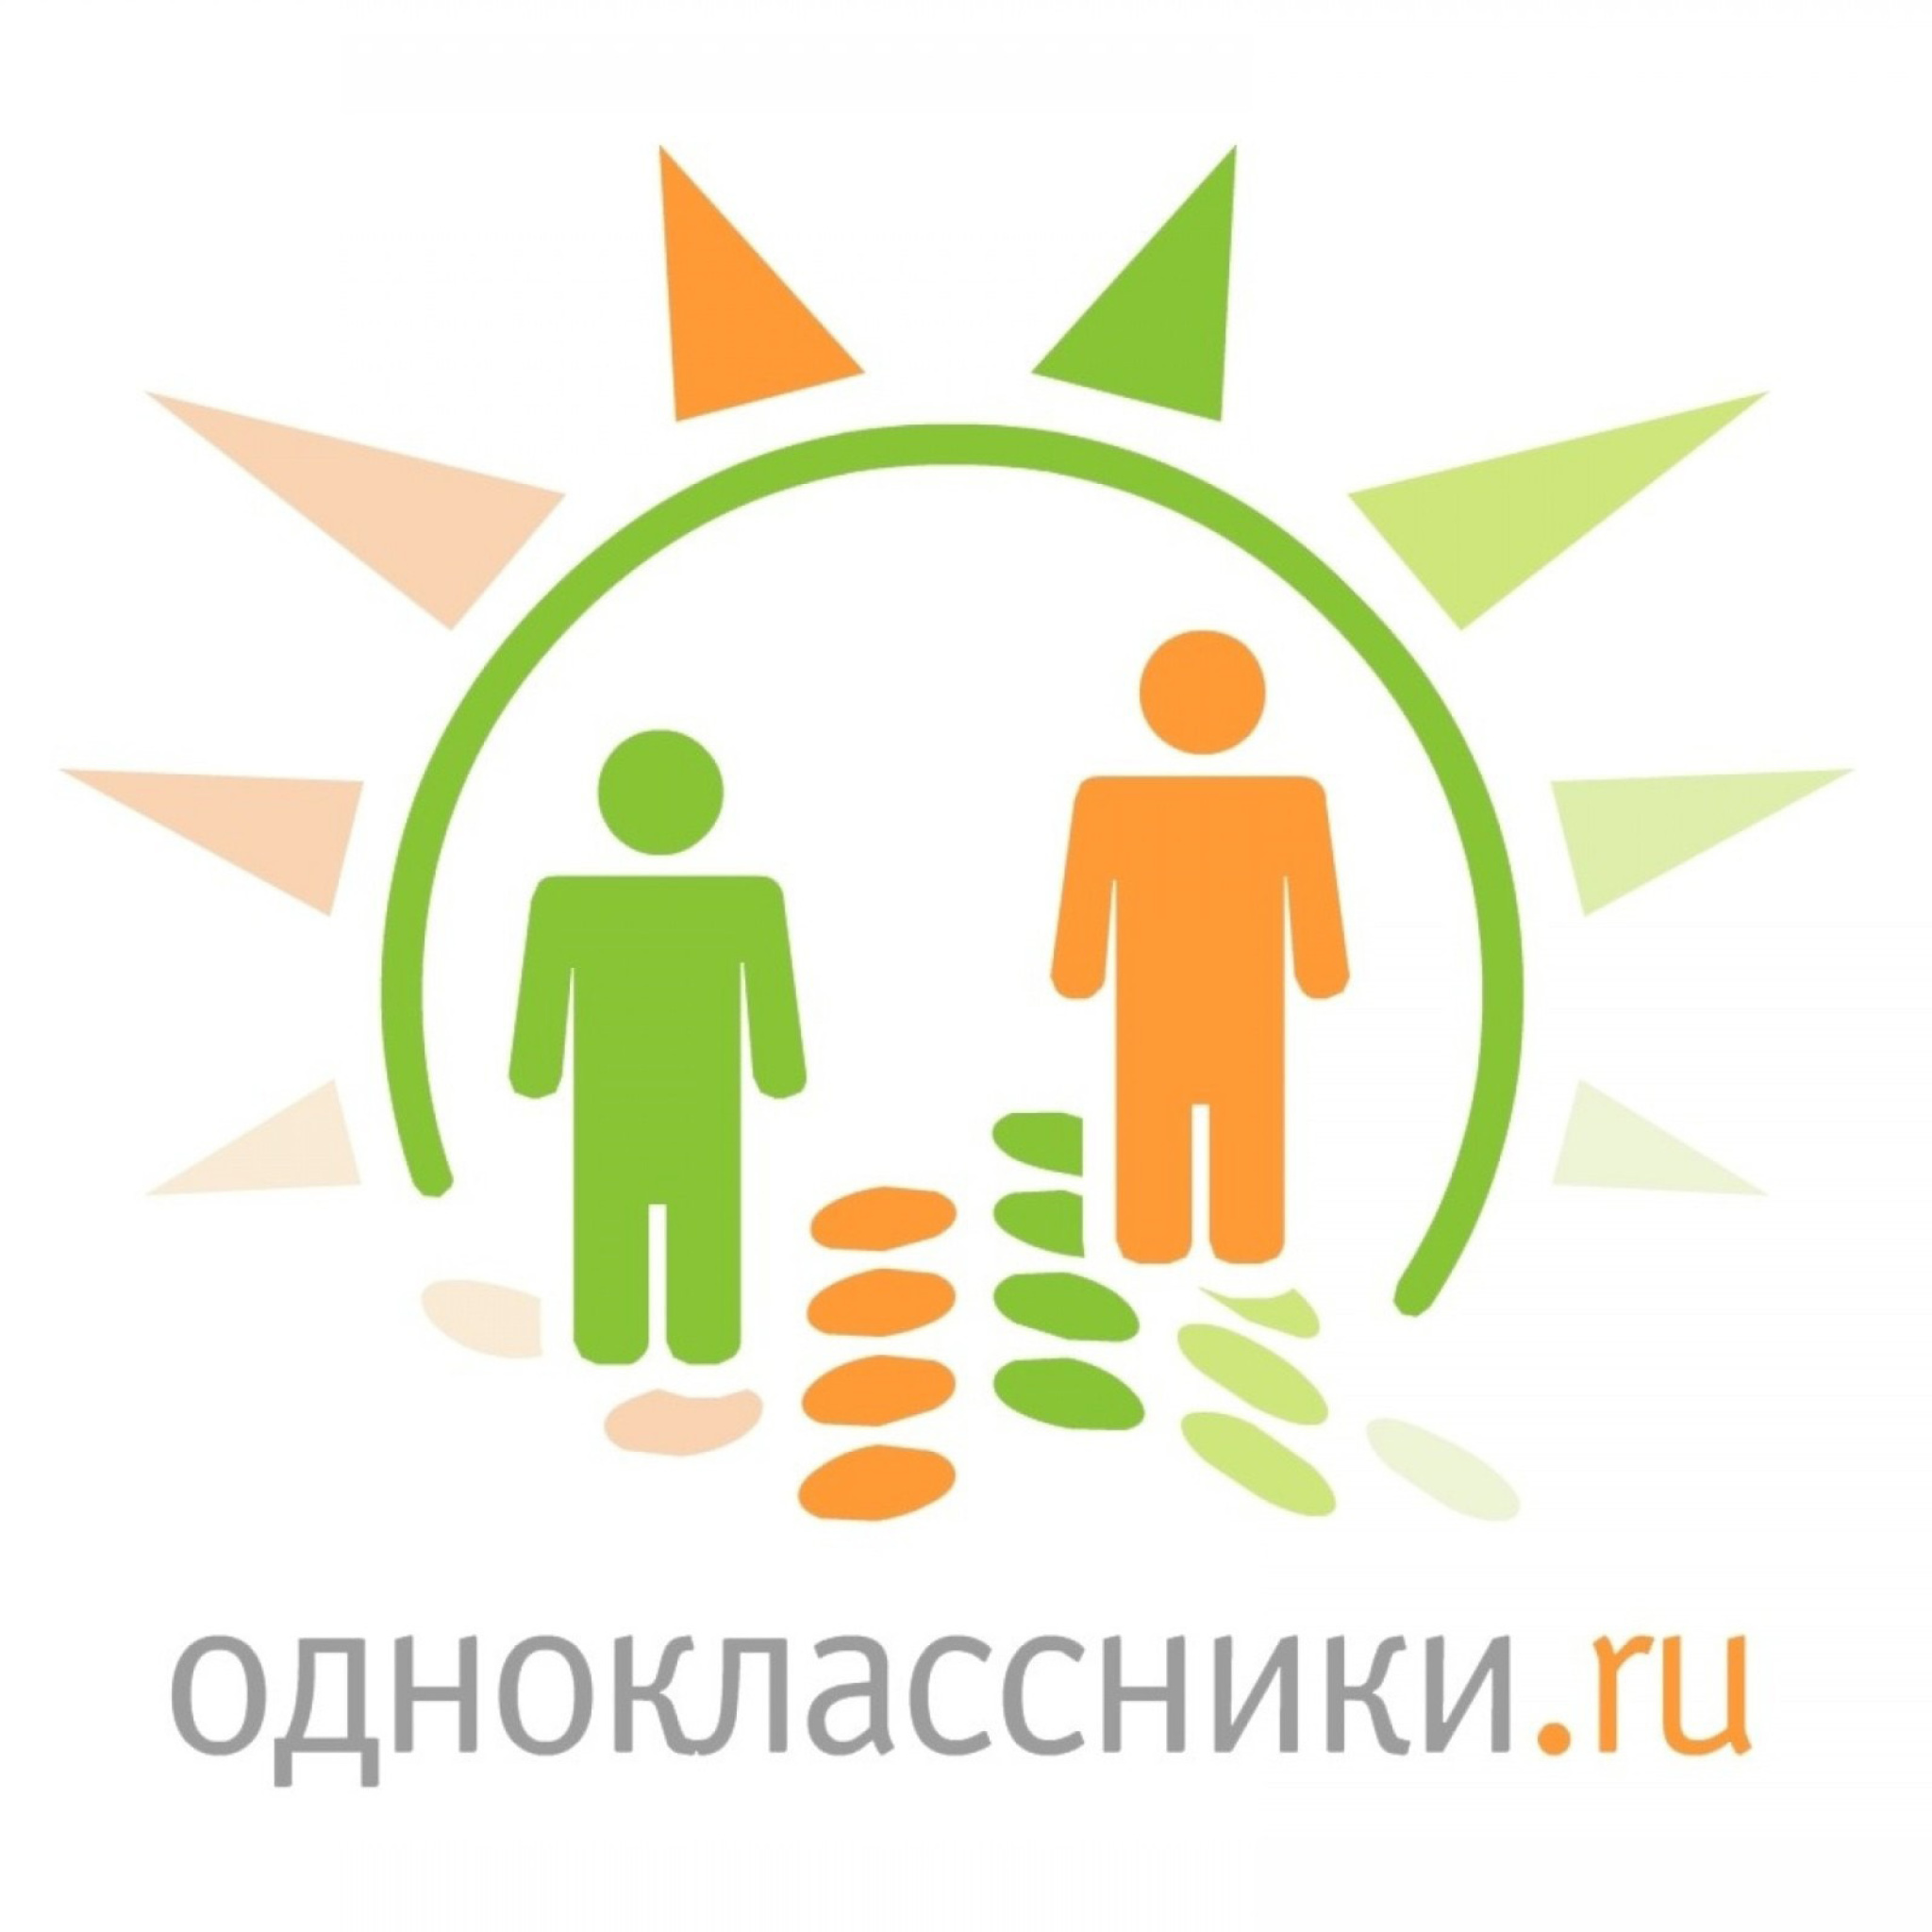 Odnoklassniki ru wallpaper 2048x2048